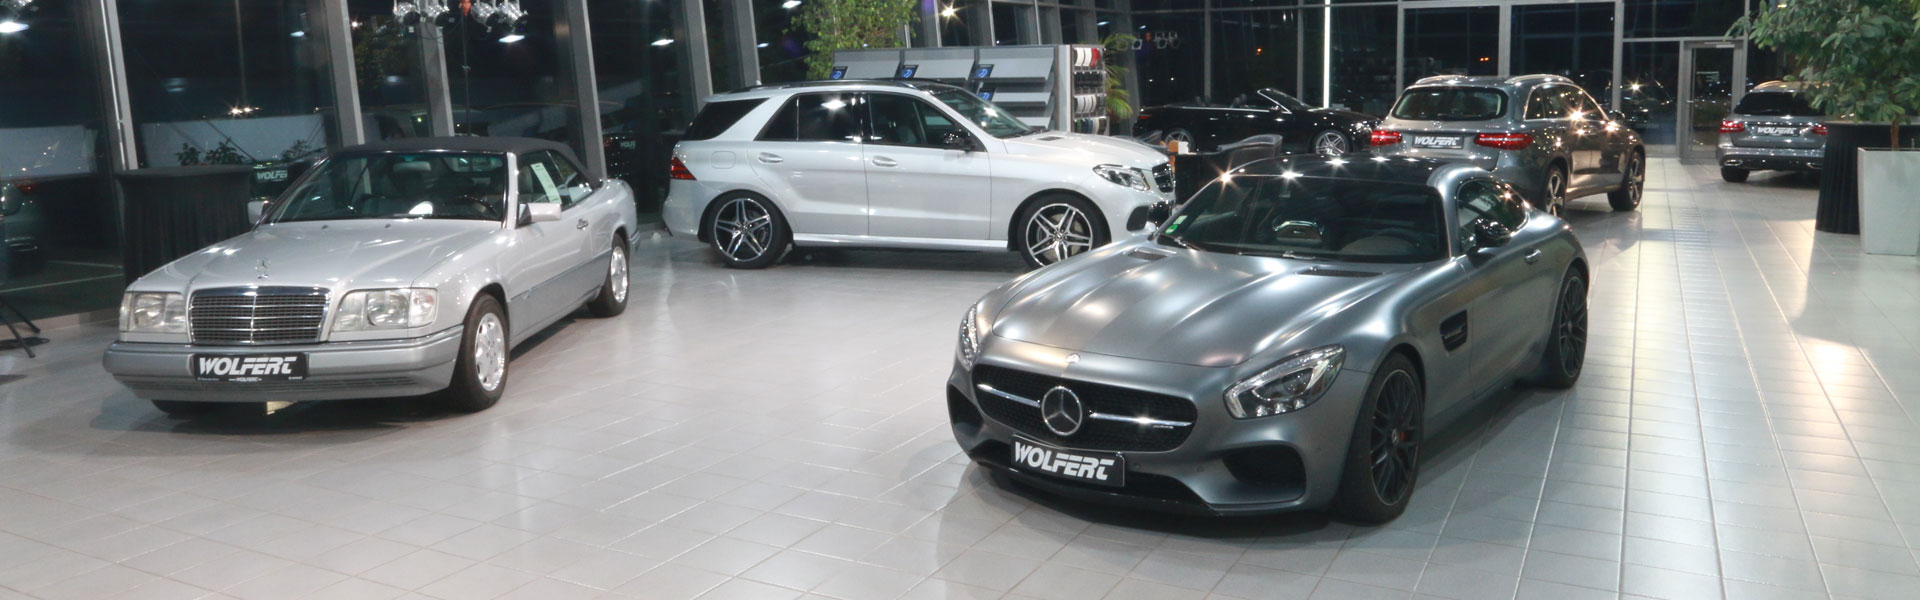 Unsere Mercedes Benz Modelle